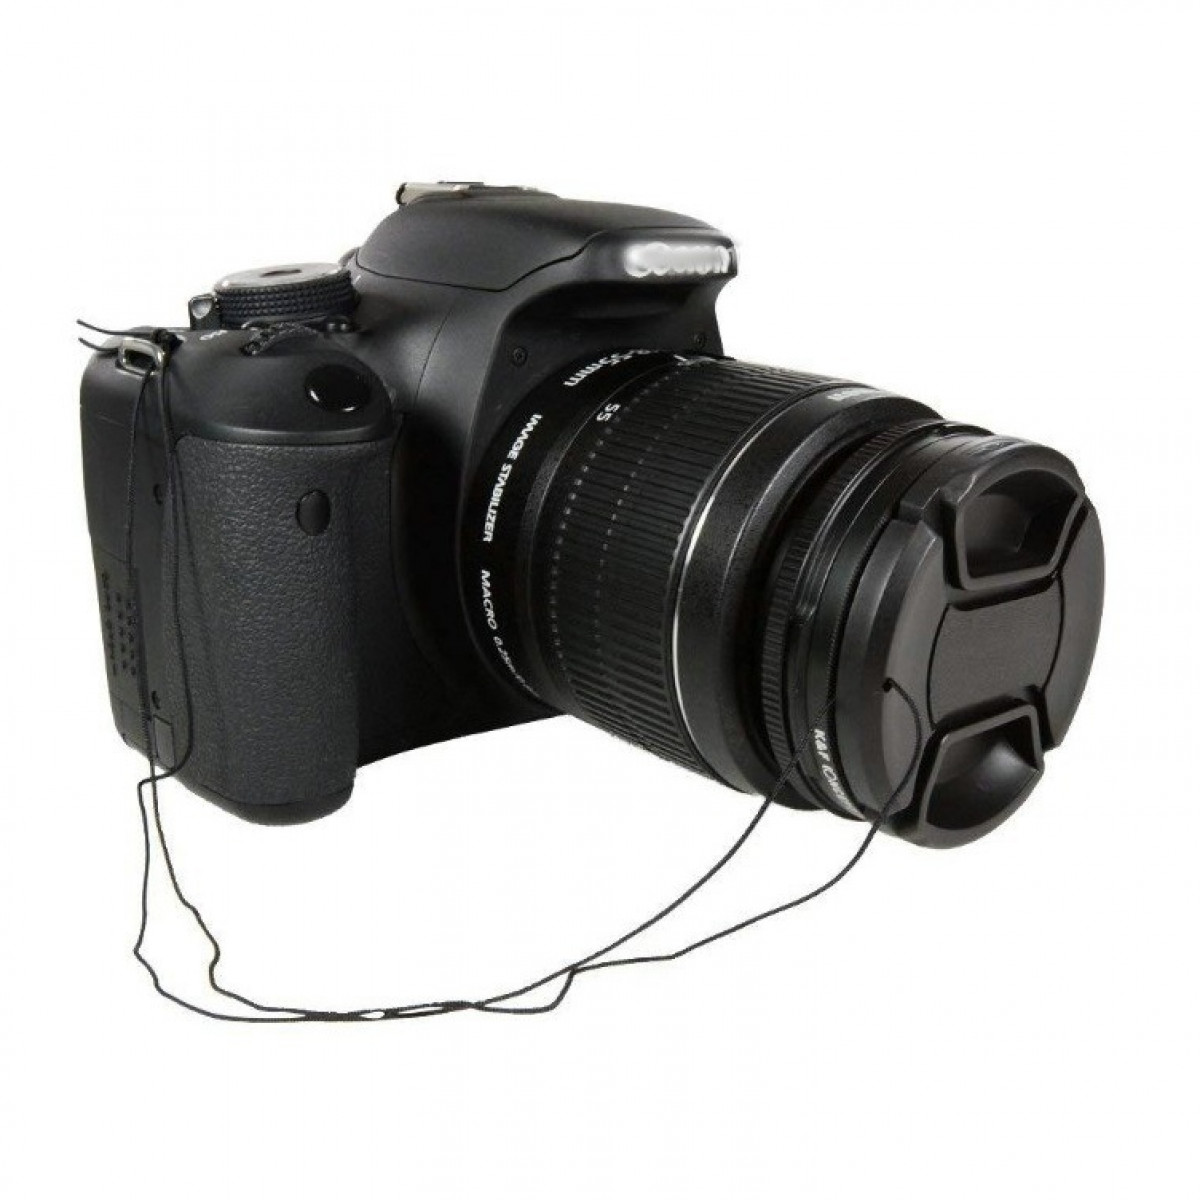 Sony für Pe INF Nikon Objektivdeckelabdeckung Objektivdeckel, Universelle Canon Schwarz Riemen mit